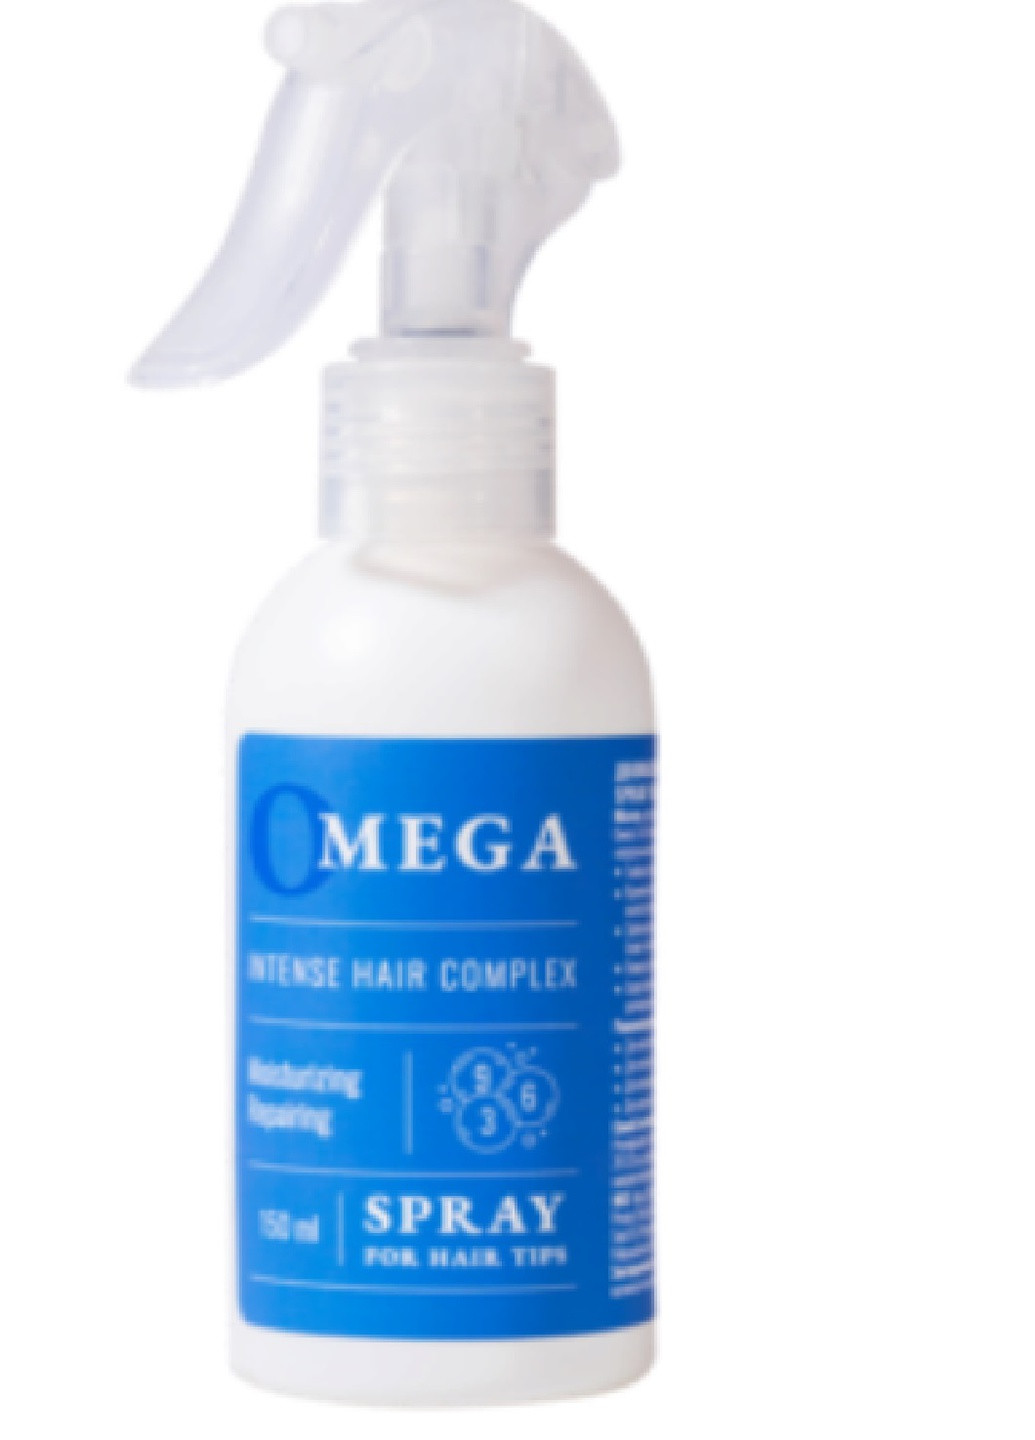 Двофазний спрей для кінчиків волосся. Spray for hair tips with Omega (254629025)